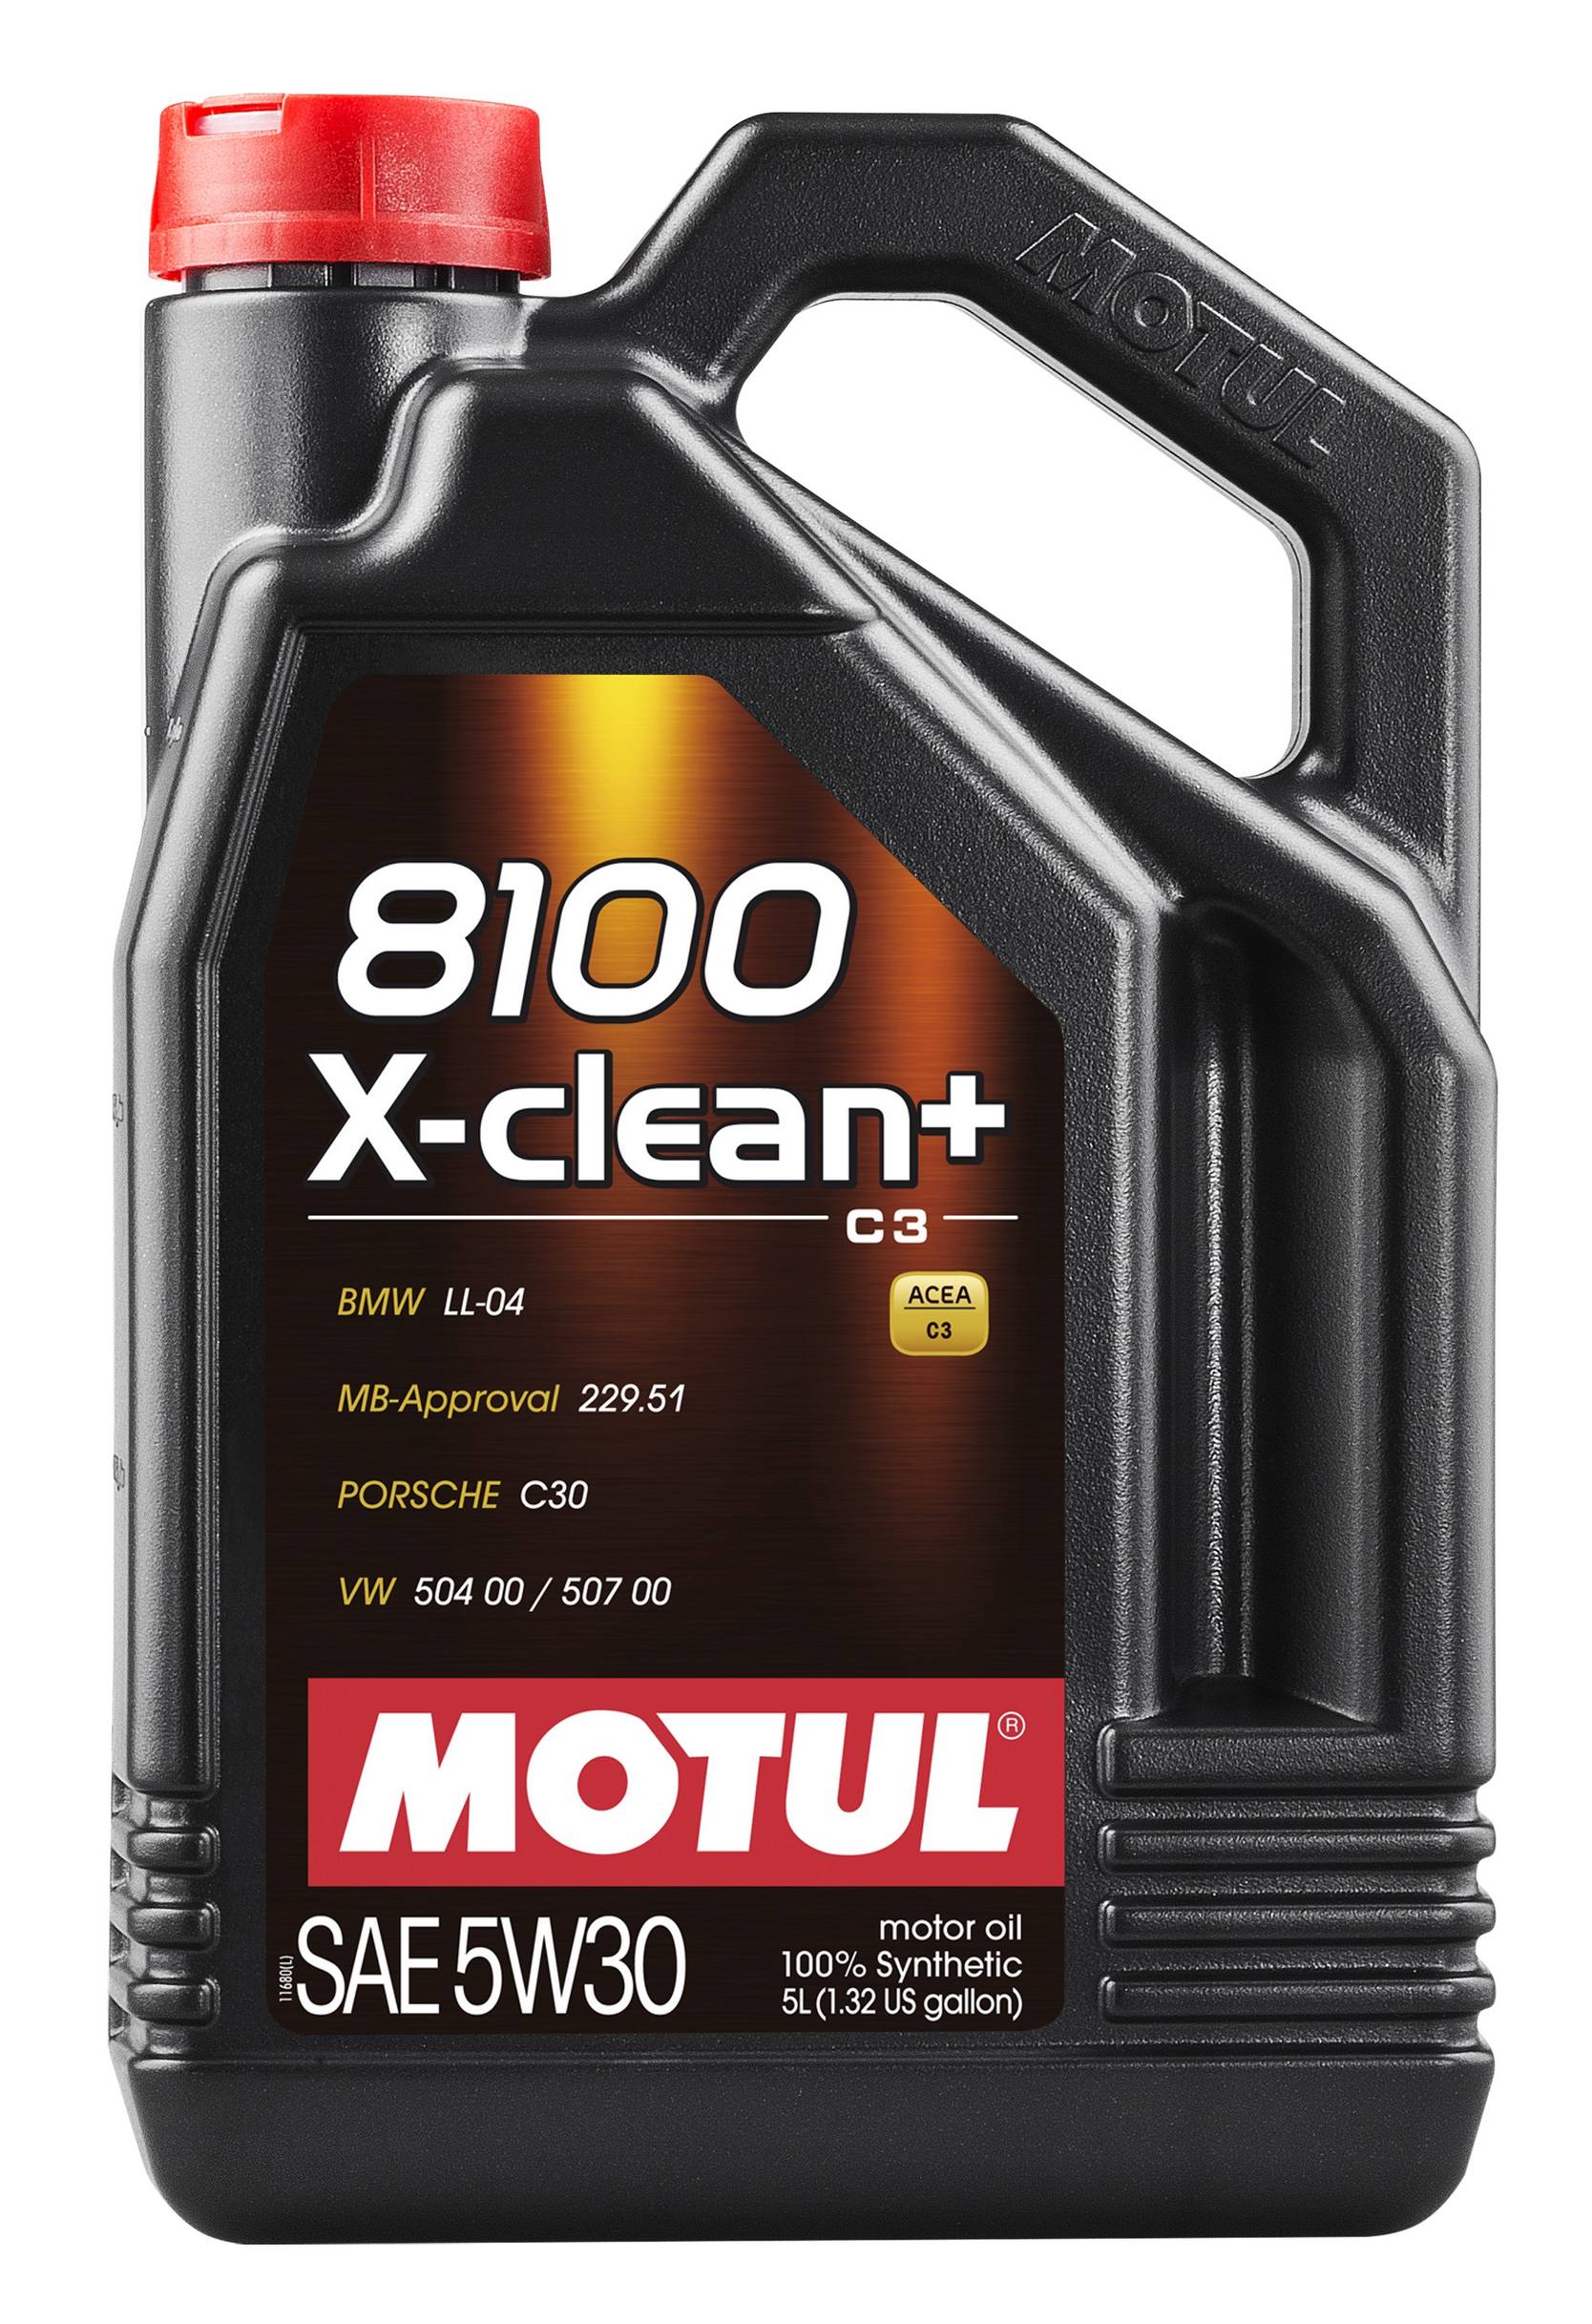 8100 X-CLEAN + 5W-30 Motor Oil Motul 106377